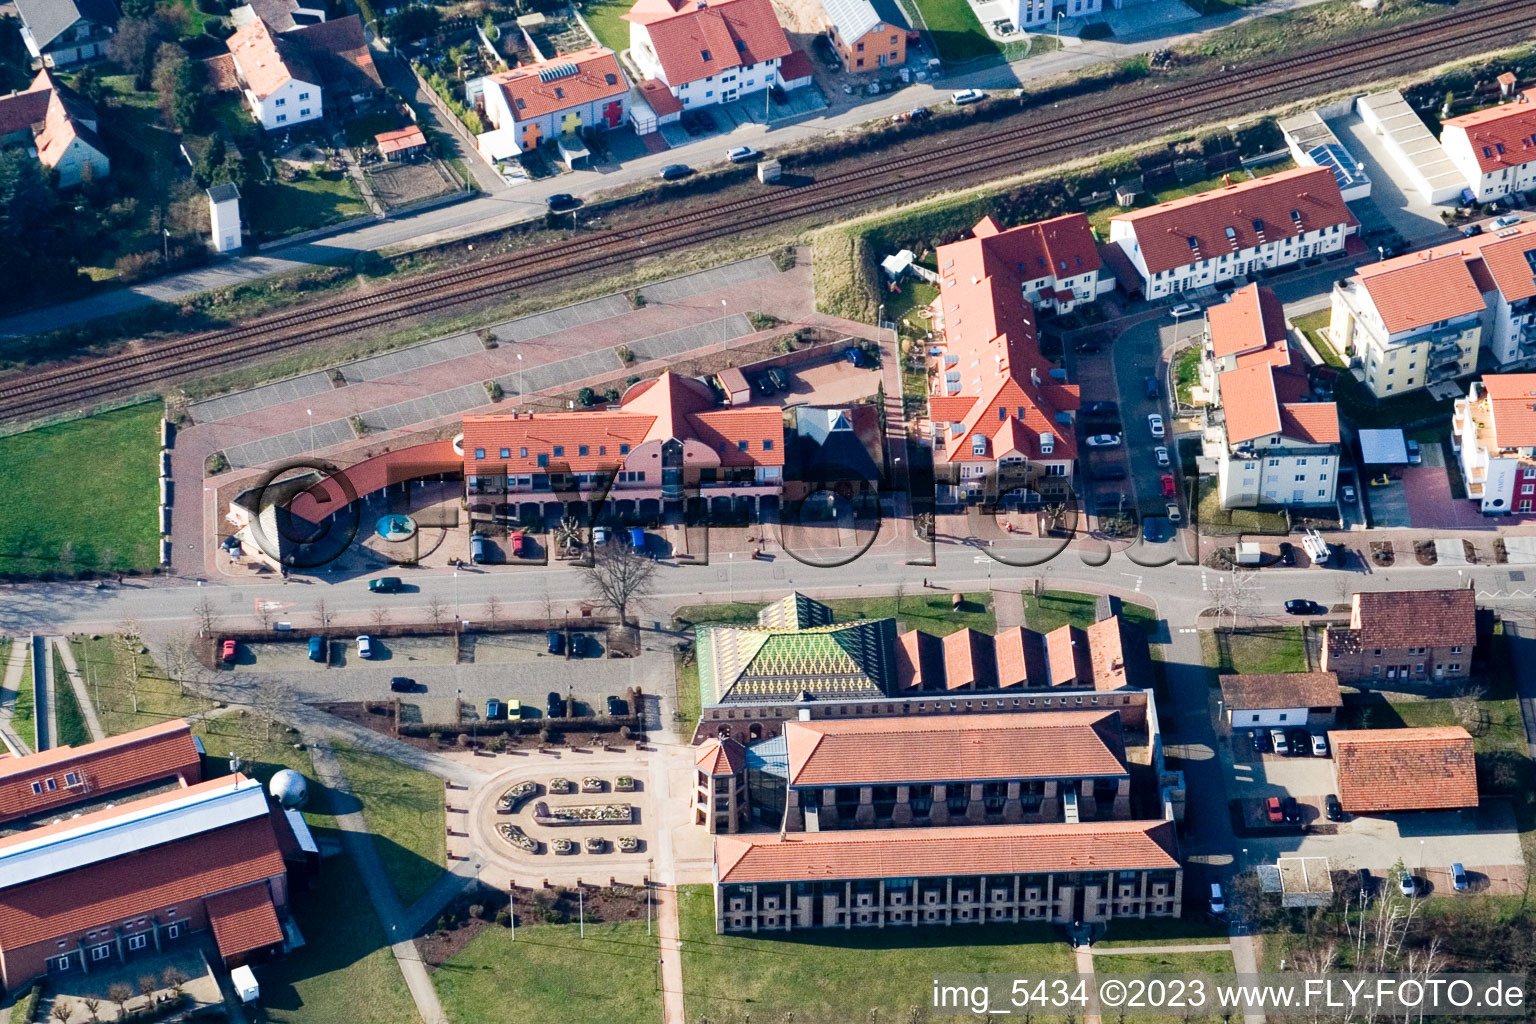 Photographie aérienne de Musée de la Briqueterie, salle des fêtes du sud-ouest à Jockgrim dans le département Rhénanie-Palatinat, Allemagne